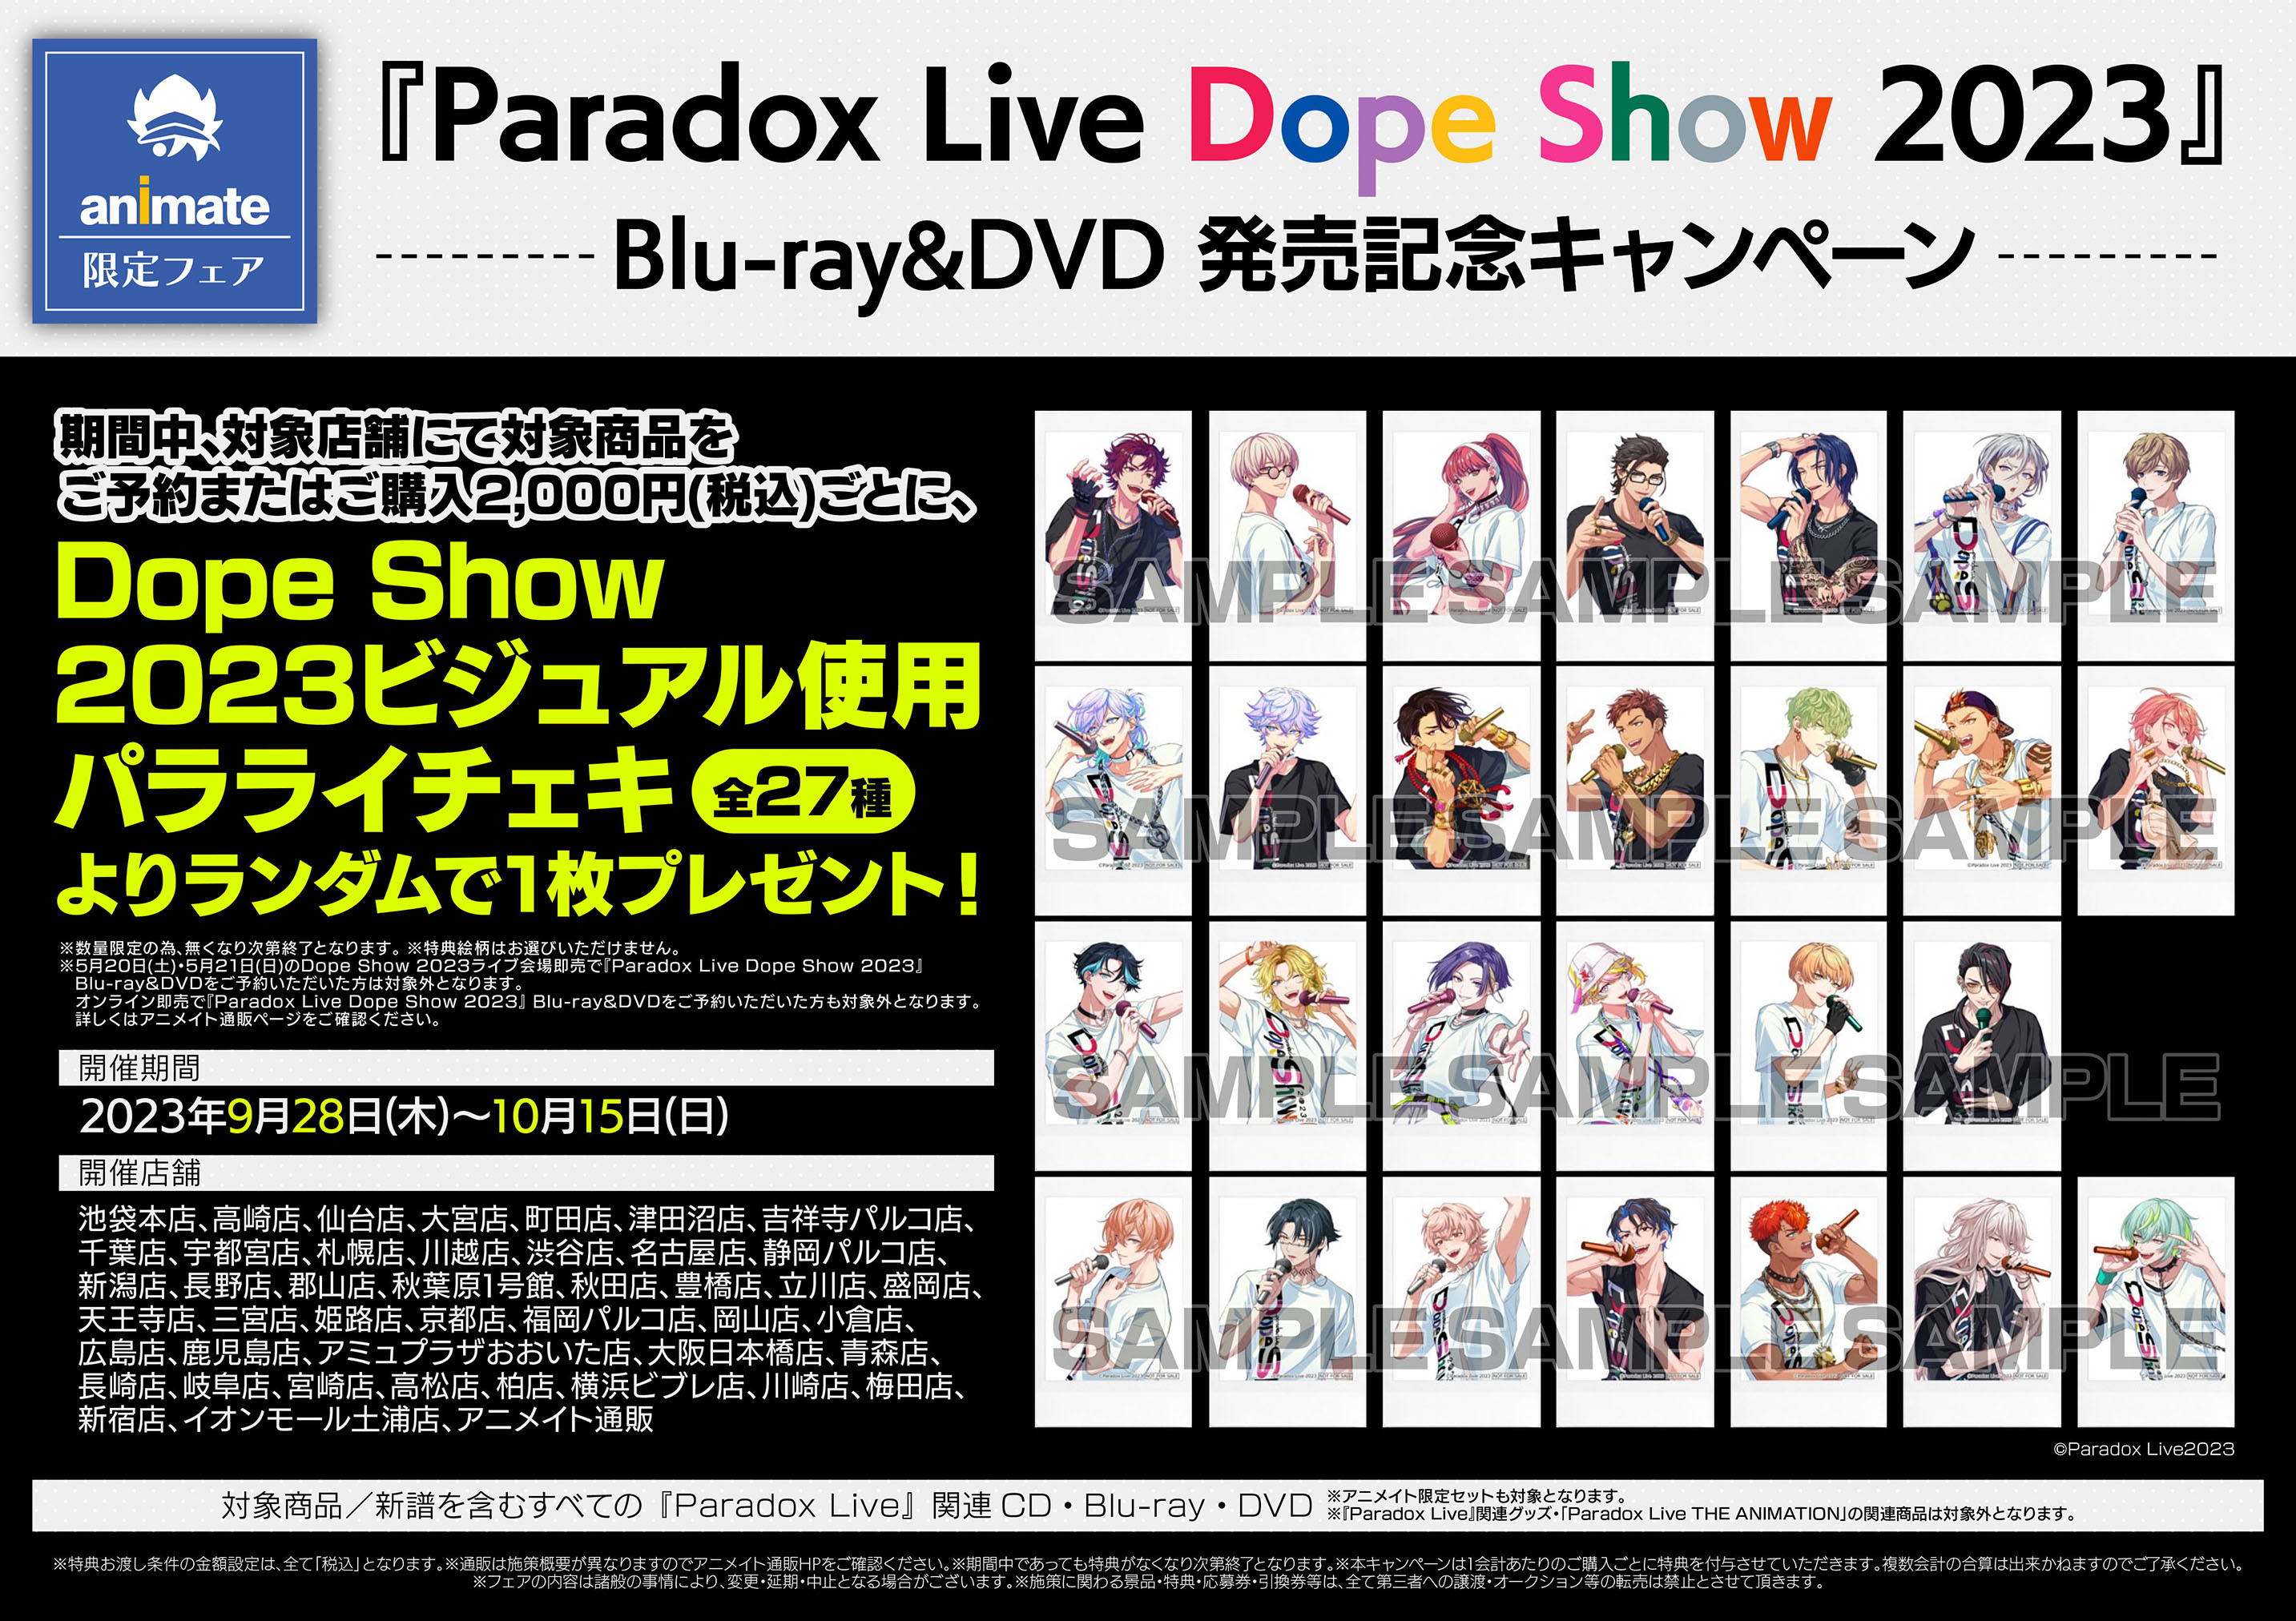 パラライドプショParadox Live Dope Show 2023 Blu-ray 円盤